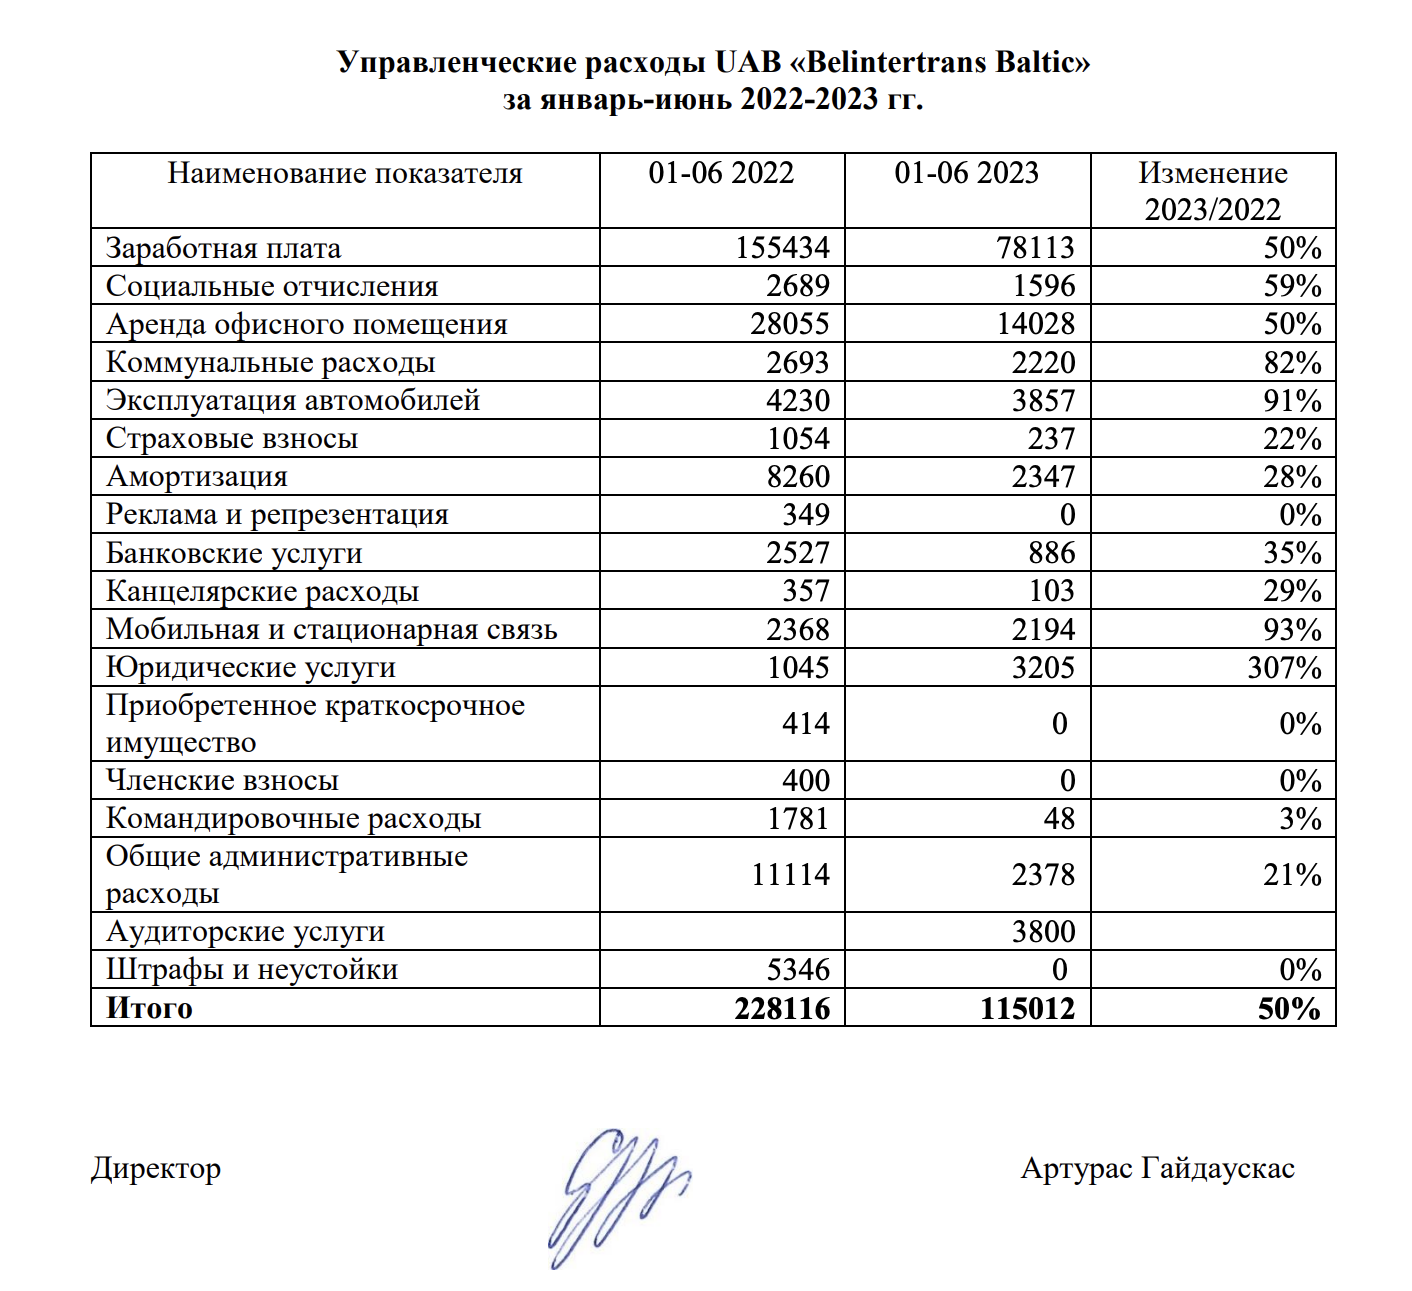 Управленческие расходы UAB "Belintertrans Baltic" в первом полугодии 2022 и 2023 гг.